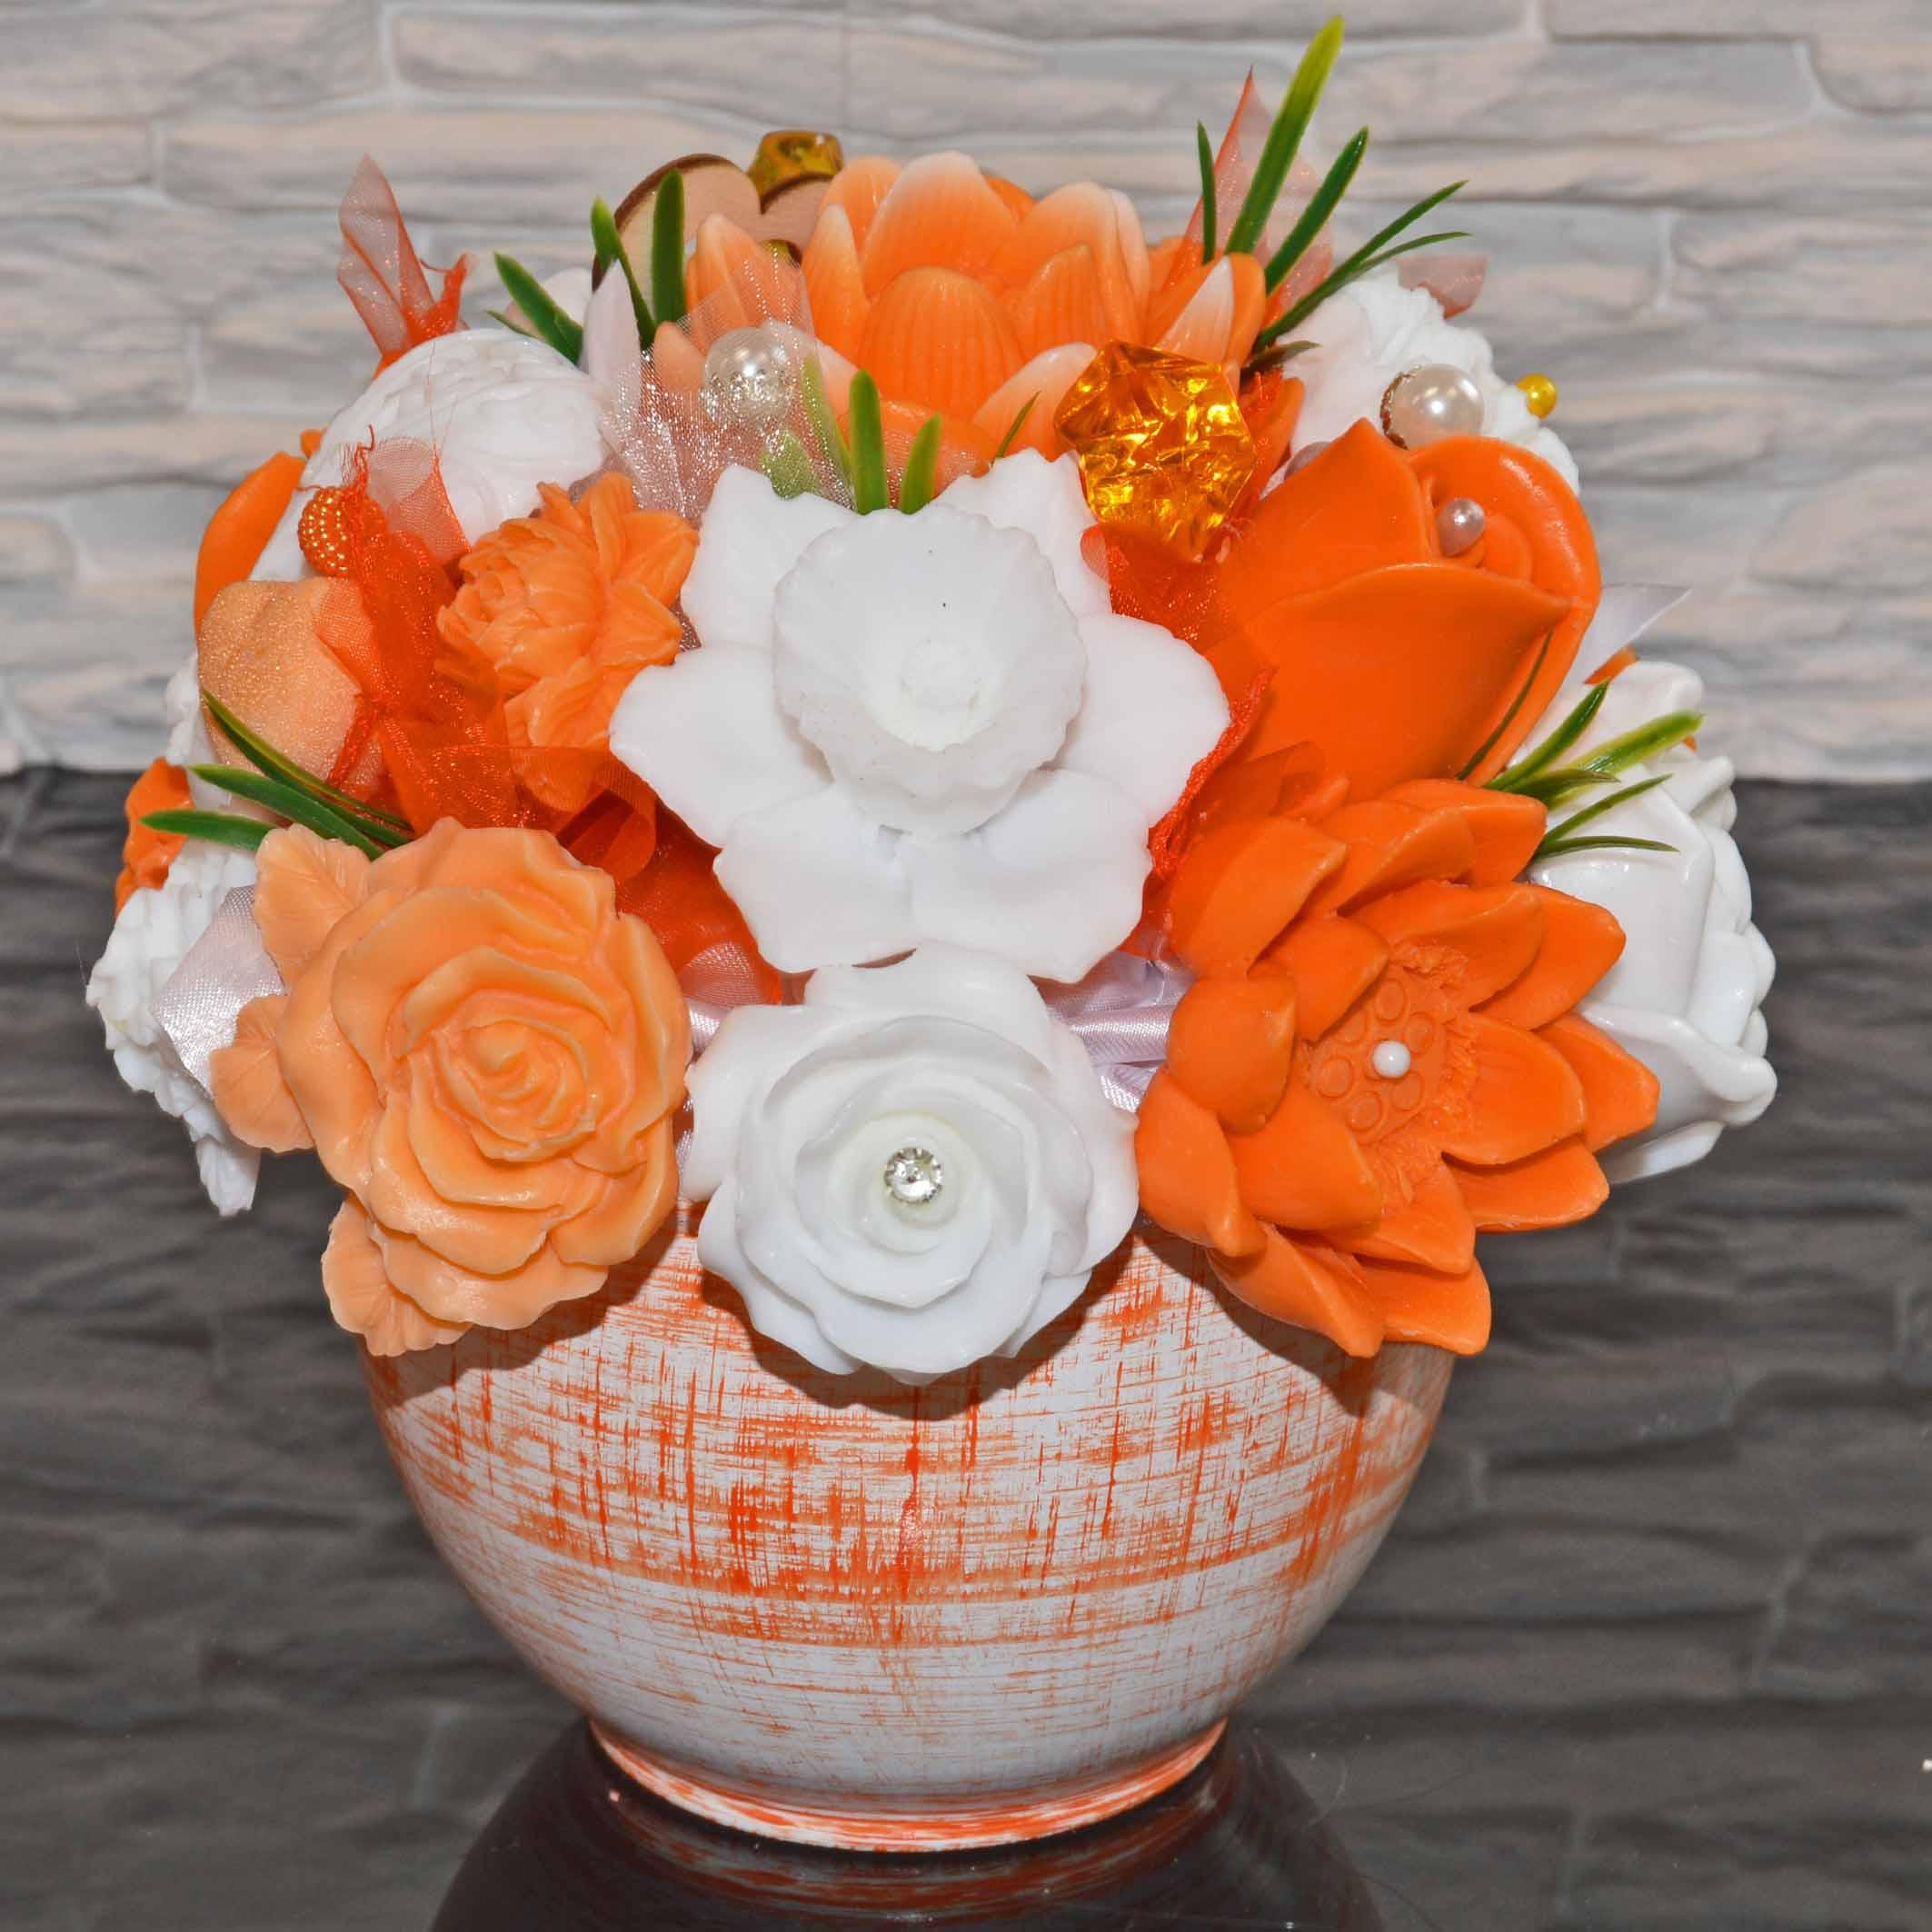 Mydlová Kytica v keramickom kvetináči - oranžová, biela